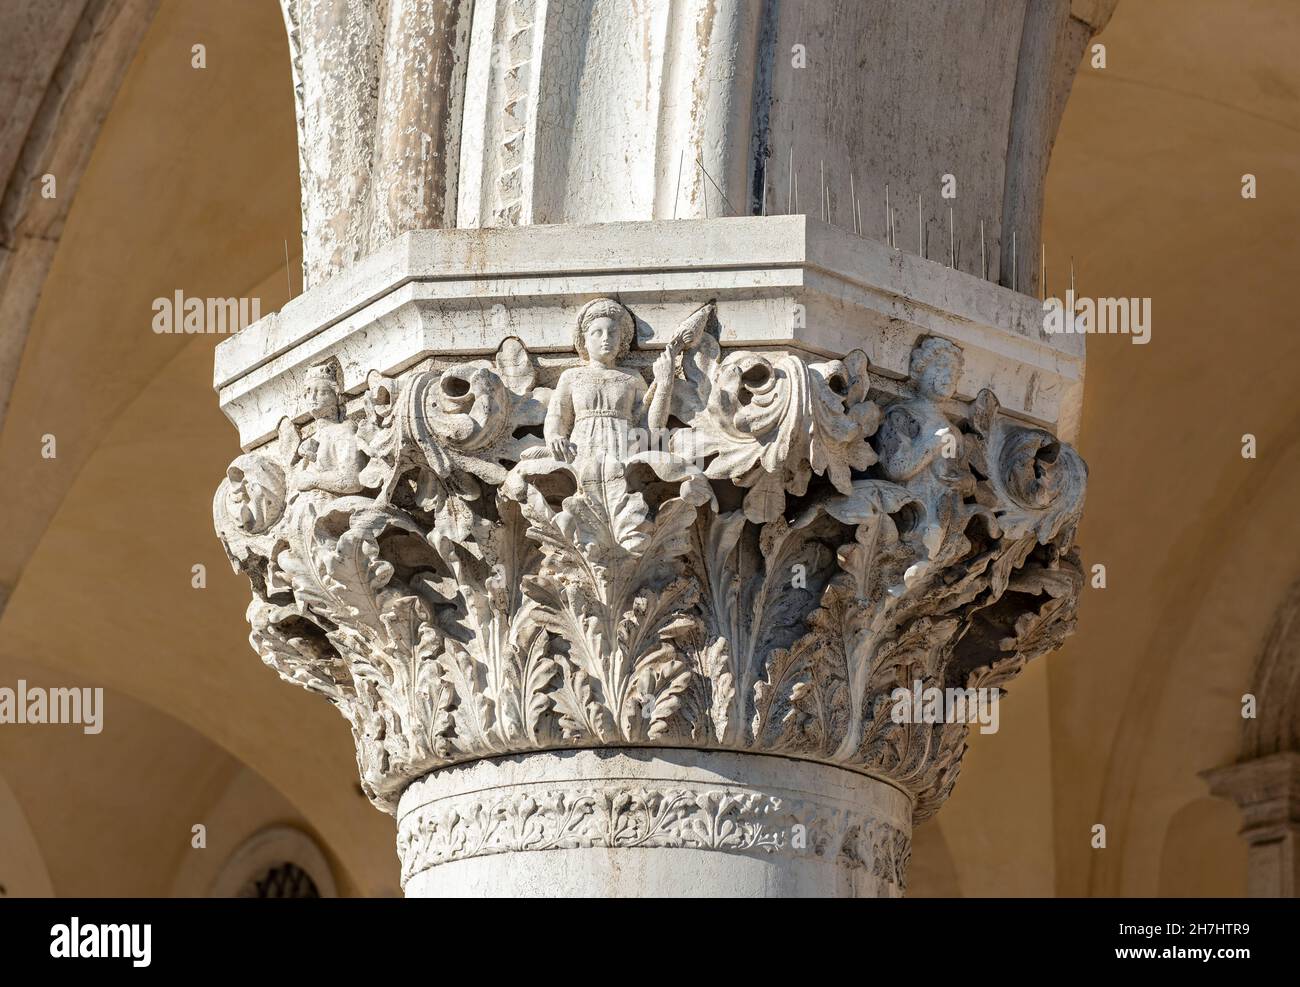 Gros plan de la colonne de colonnade, Palais des Doges (Palazzo Ducale), Piazza San Marco (place Saint-Marc), Venise, Italie Banque D'Images